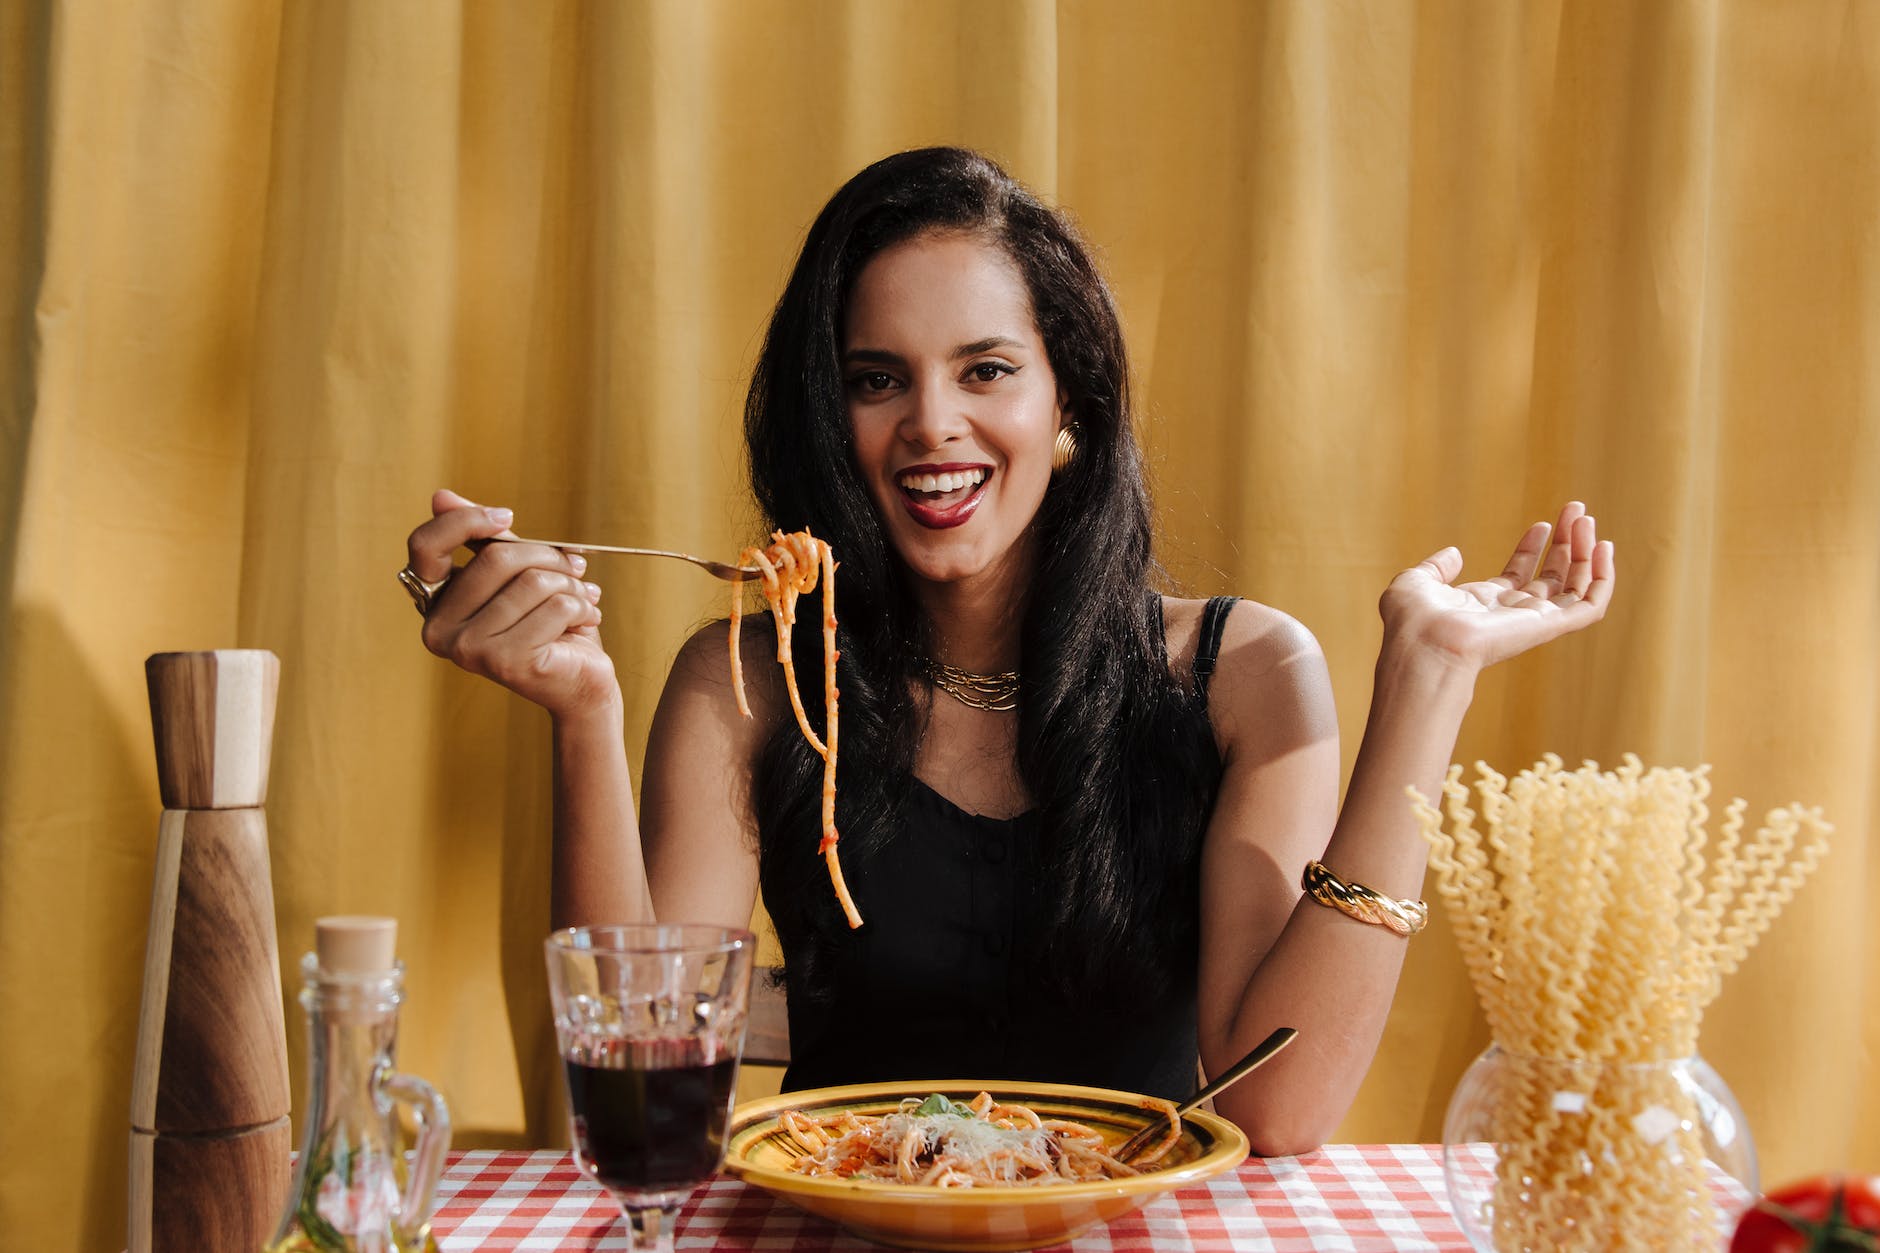 smiling woman eating pasta